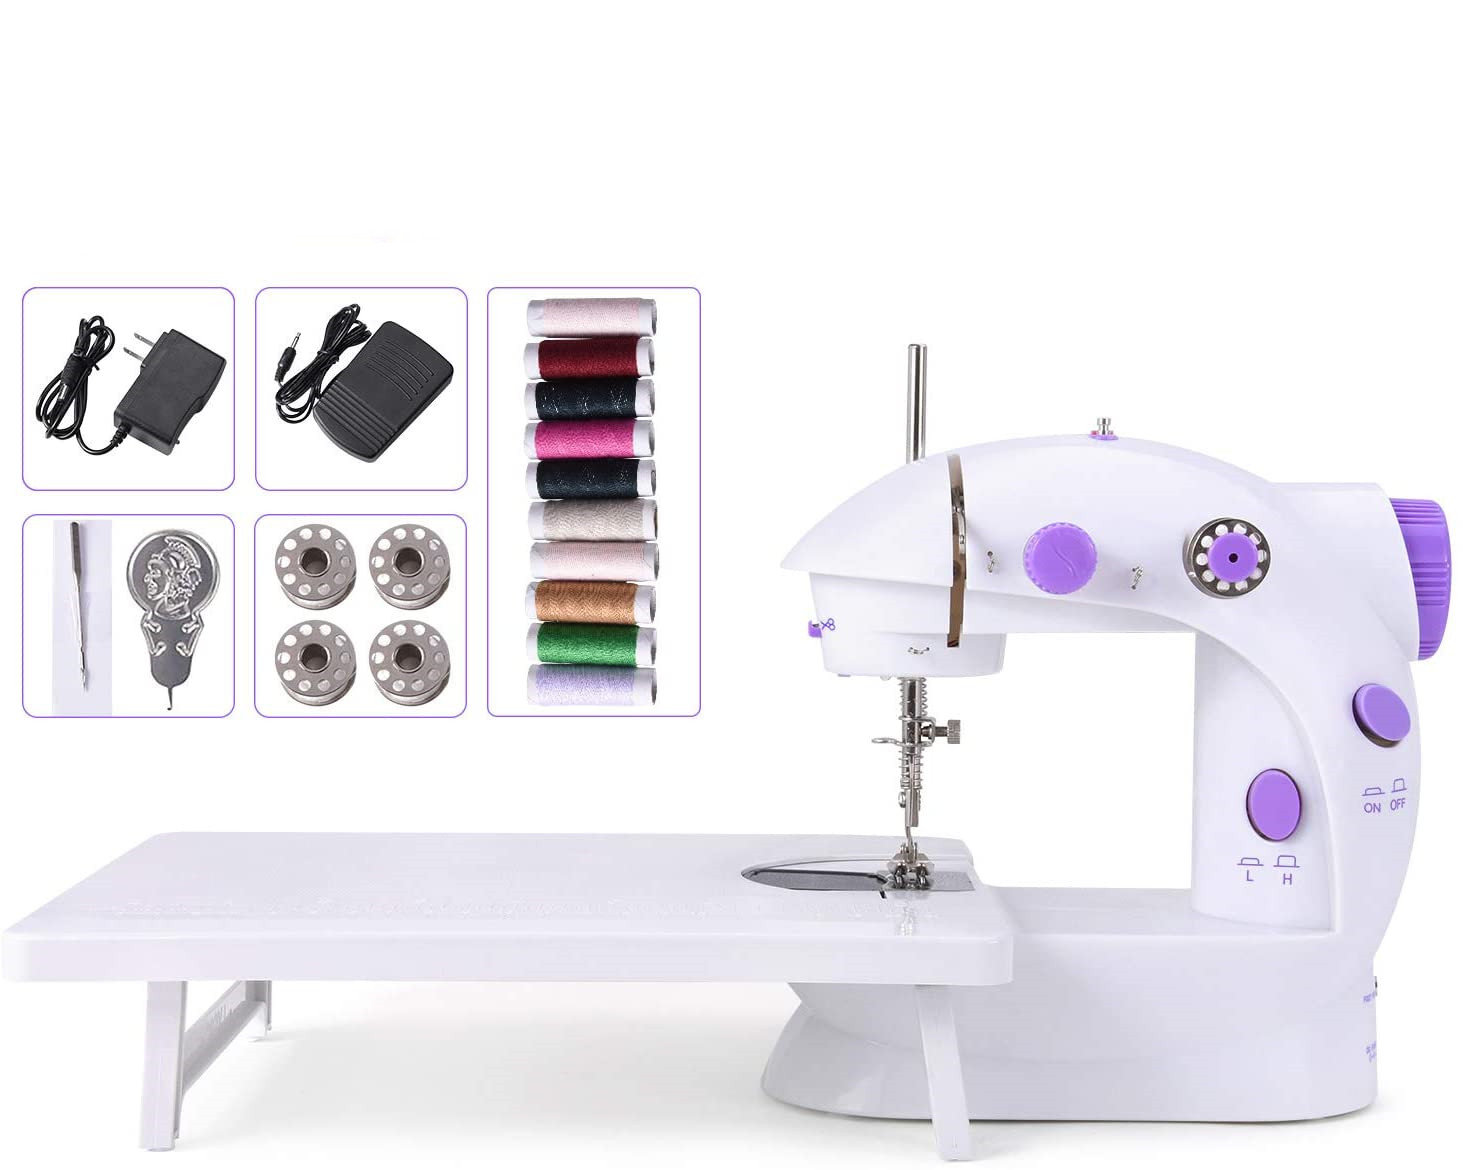 BTY Mechanical Sewing Machine - Wayfair Canada